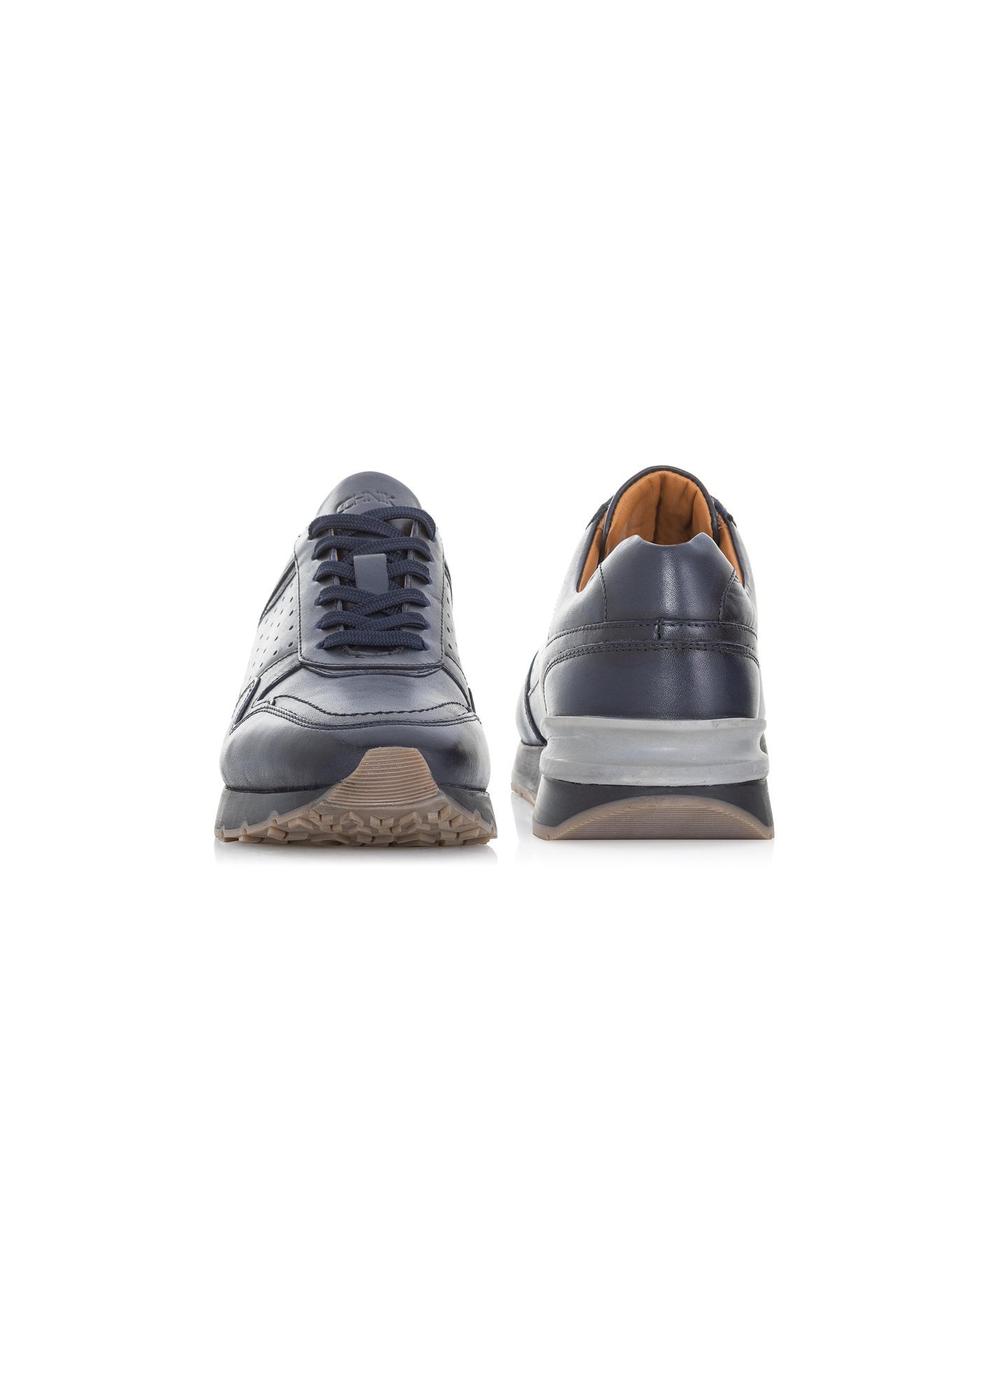 Granatowe skórzane sneakersy męskie BUTYM-0434-68(W23)